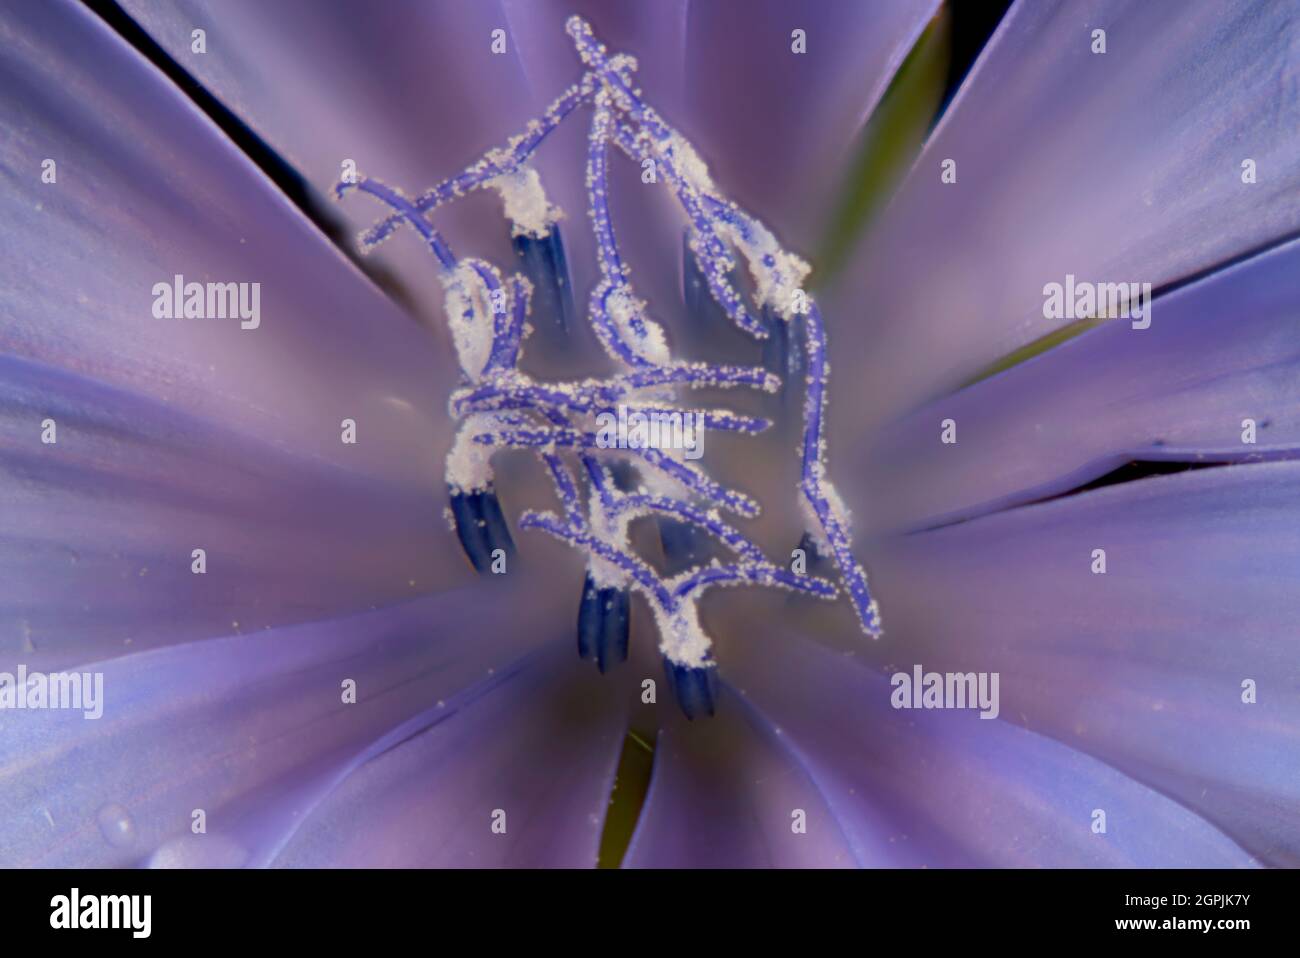 Gros plan extrême d'une seule fleur de chicorée (Cichorium intybus) montrant des anthères et des étamines. Banque D'Images